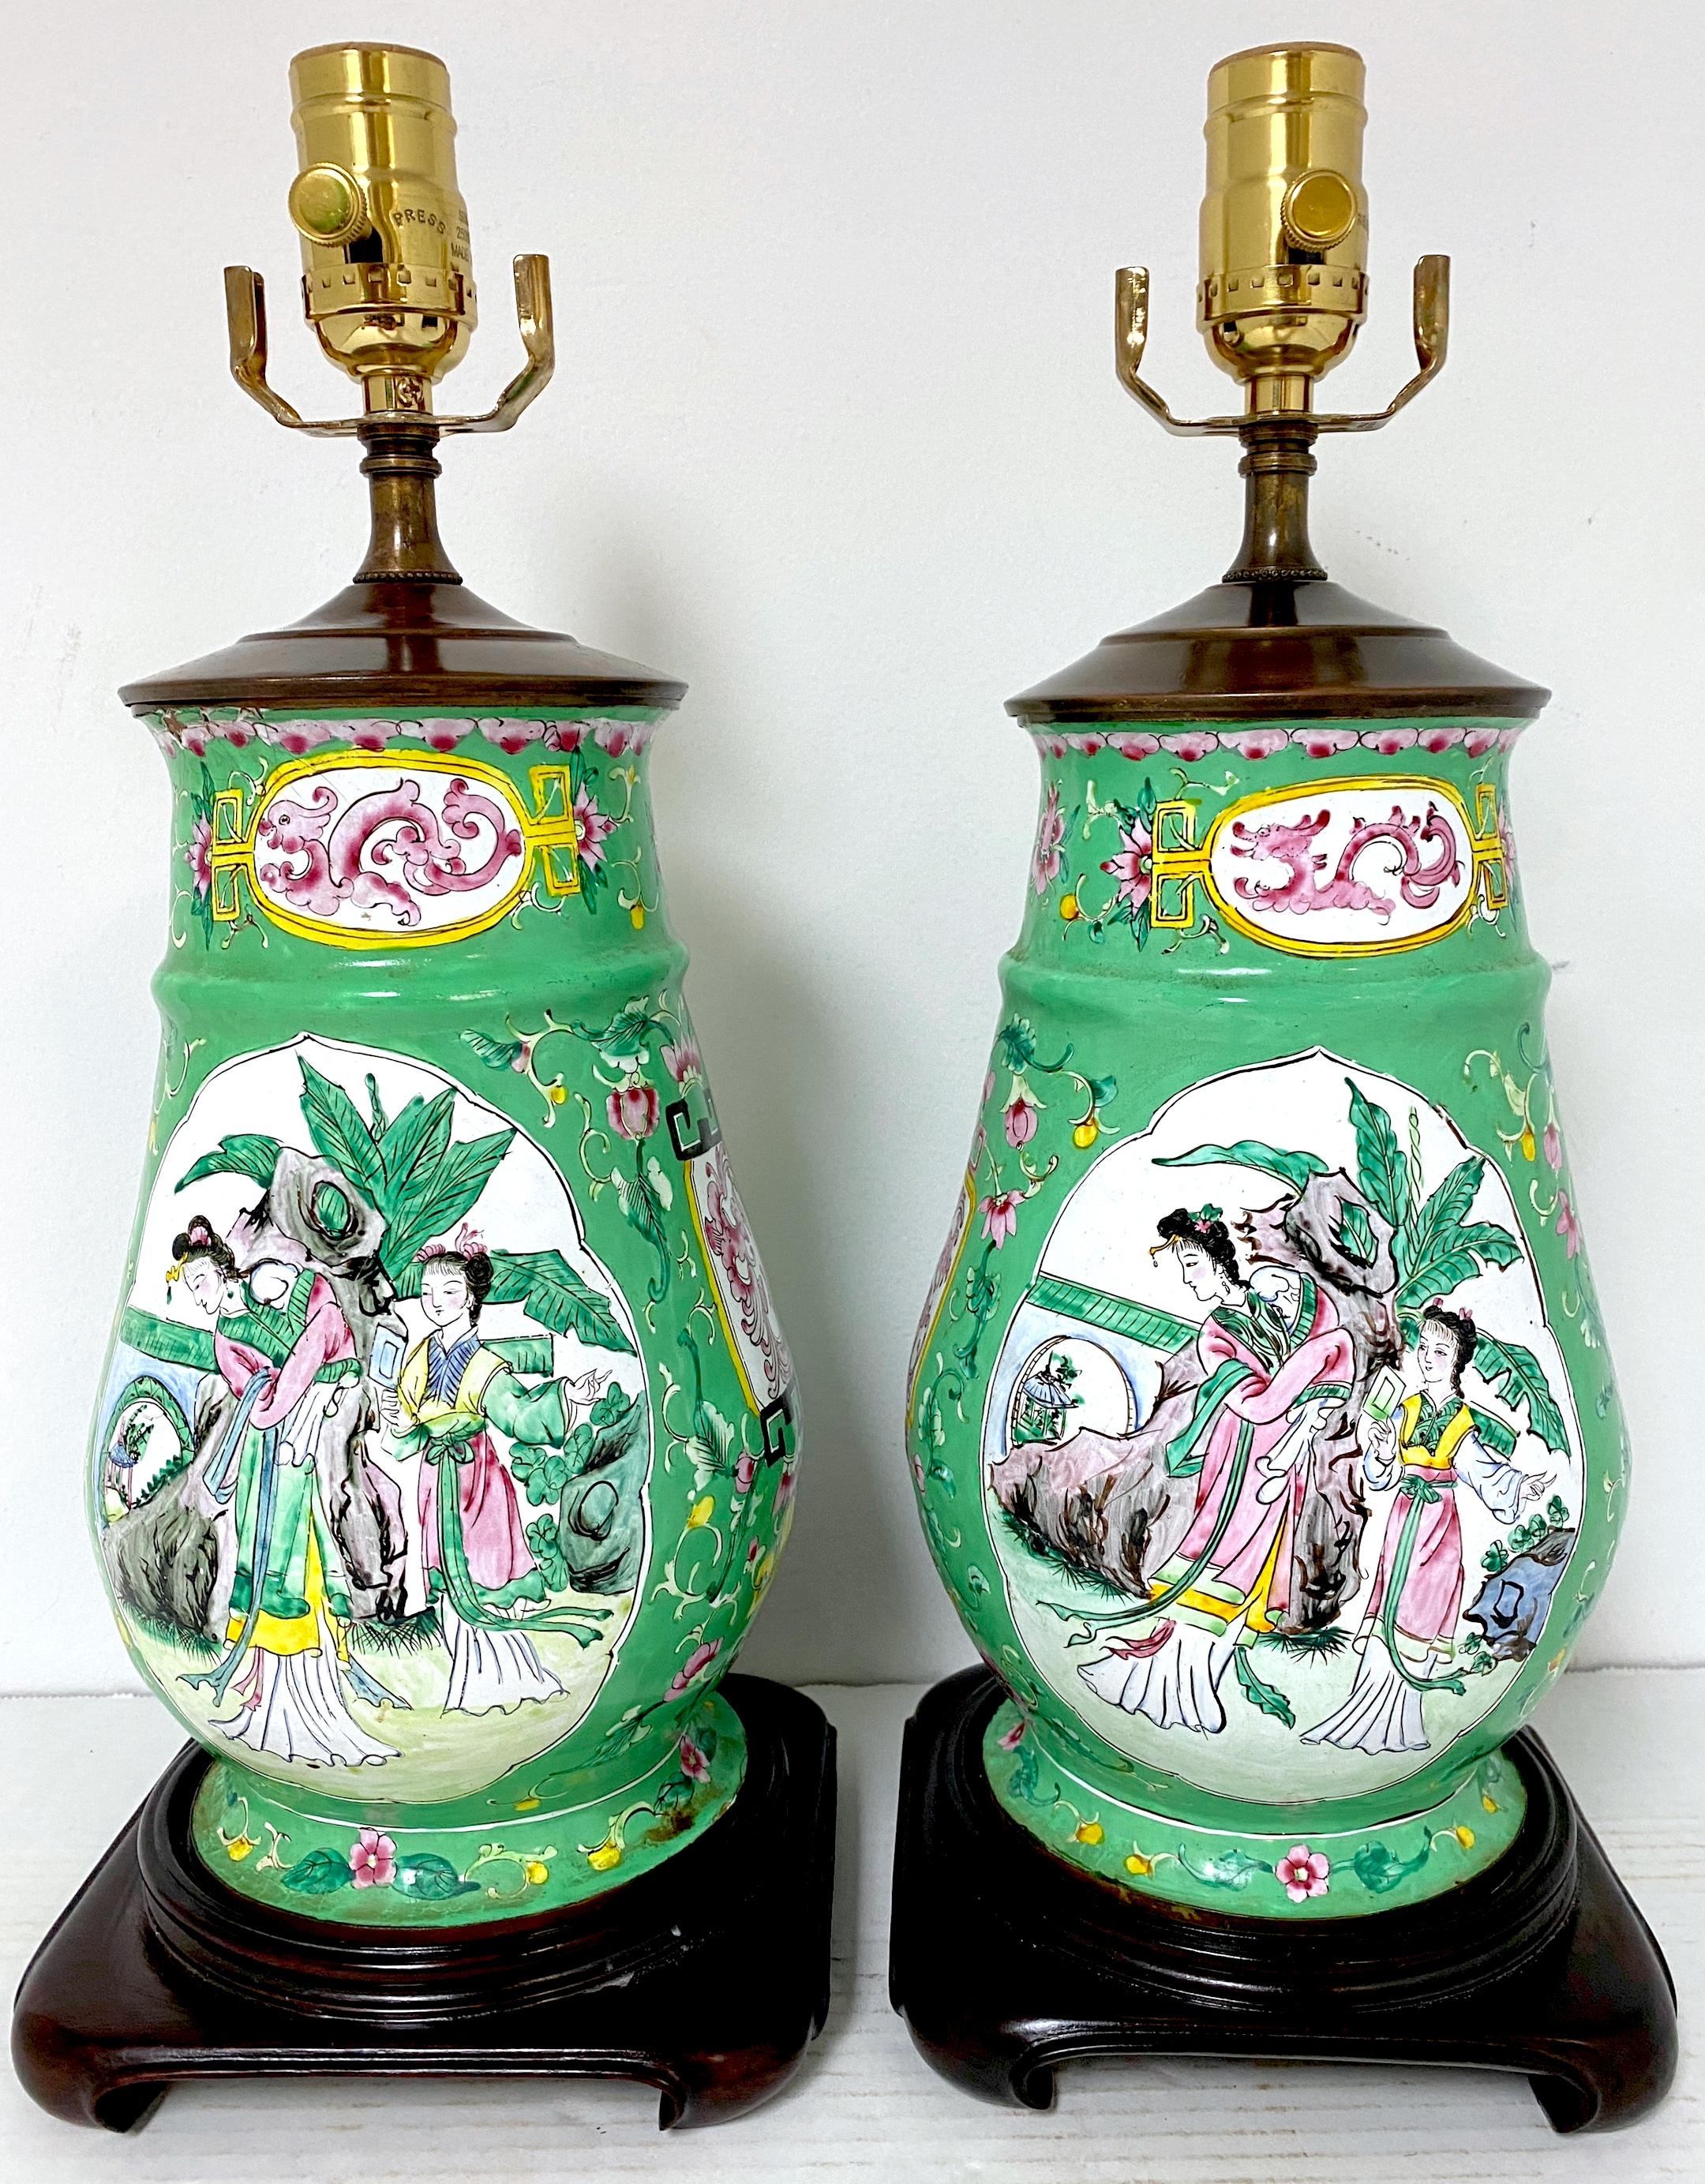 Paire de vases à motifs mandarins et oiseaux de Canton du 20ème siècle  

Paire de vases en émail de Canton du 20e siècle à motif de mandarins et d'oiseaux, transformés en lampes. Ces vases enchanteurs sont décorés d'émaux de Canton sur fond vert